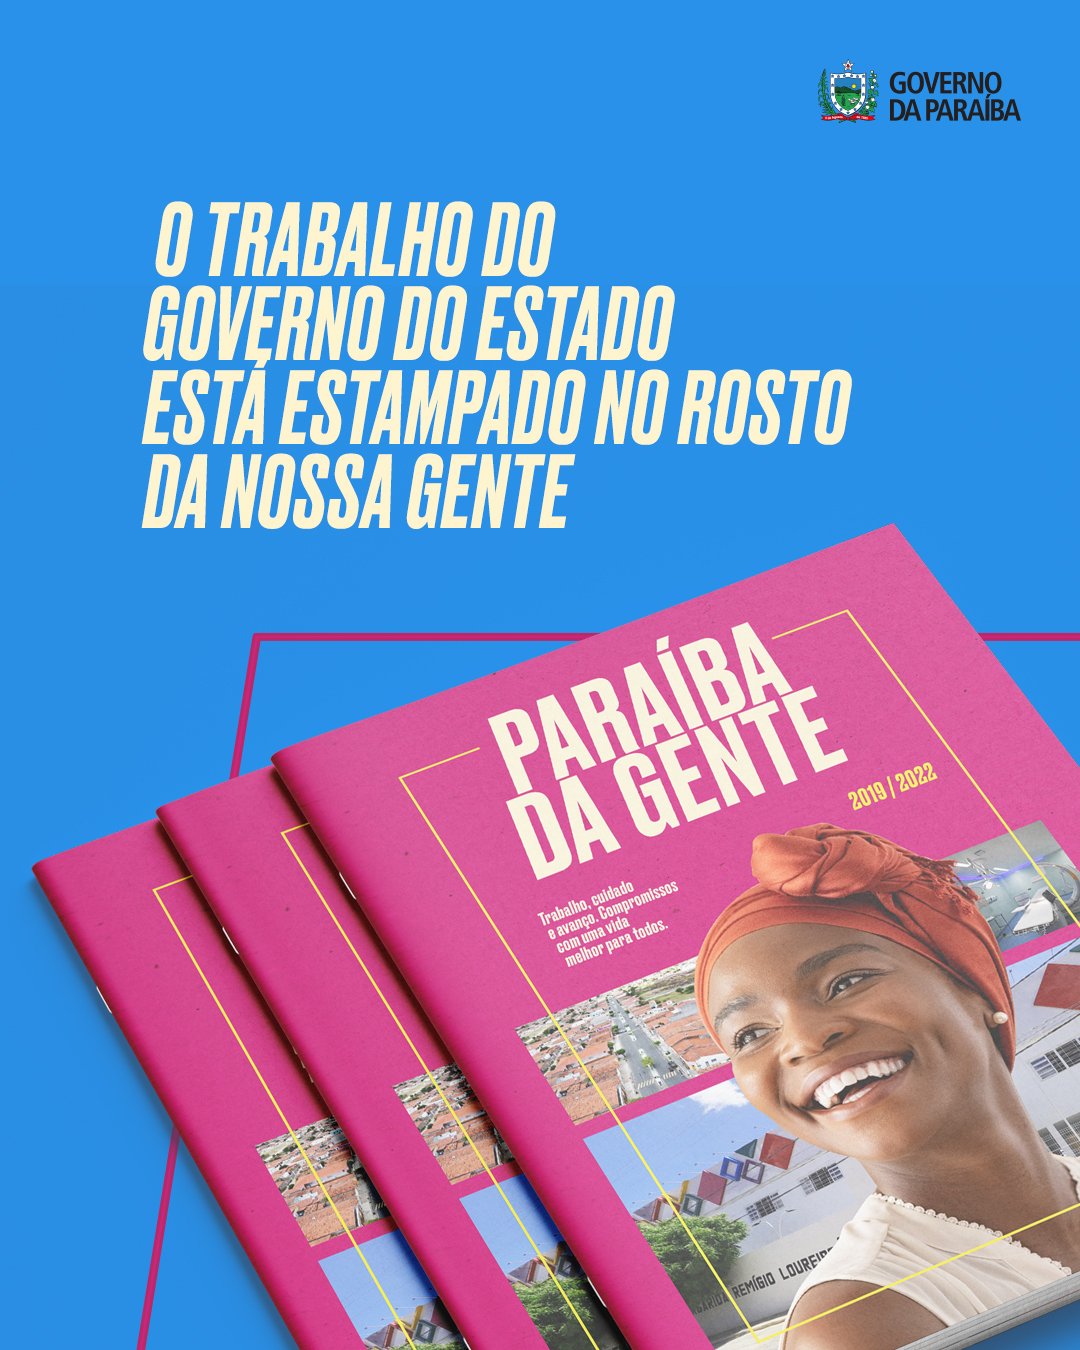 Monteiro ganha destaque na revista “Paraíba da Gente” lançada pelo Governo do Estado